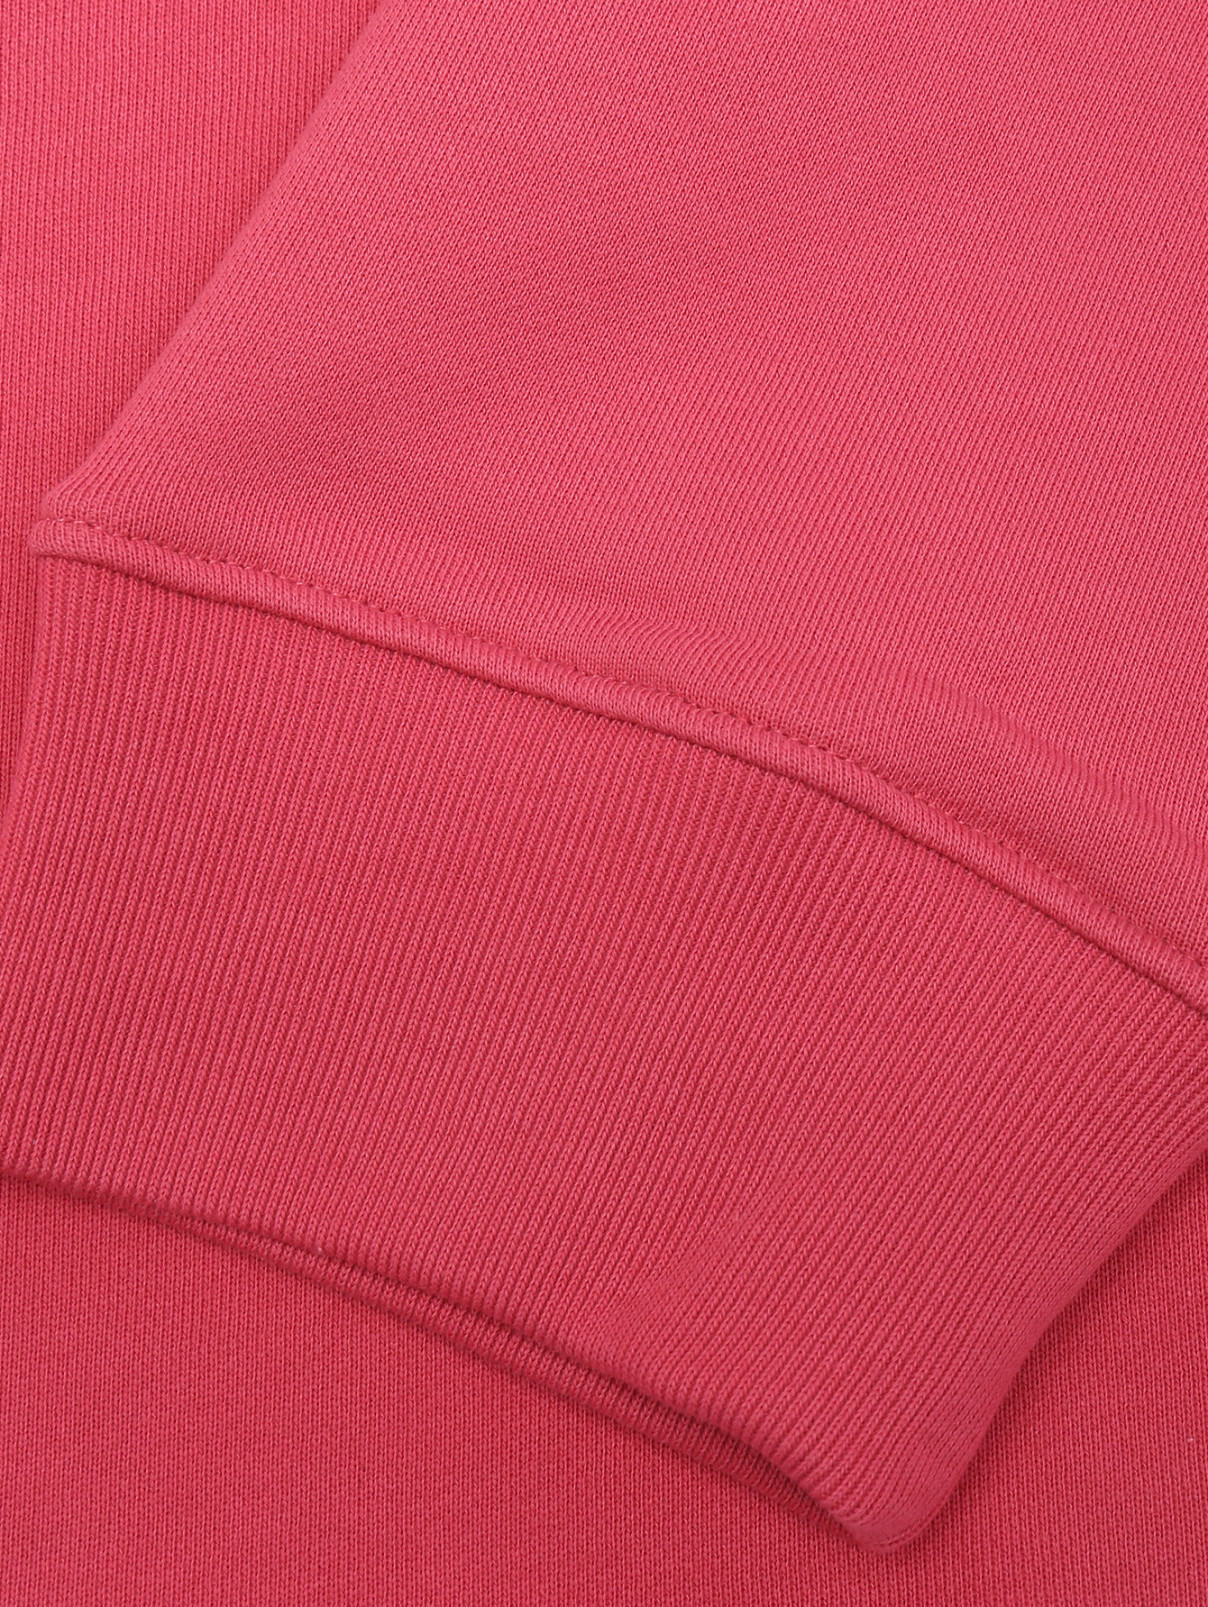 Толстовка с принтом и капюшоном Moschino  –  Деталь1  – Цвет:  Розовый